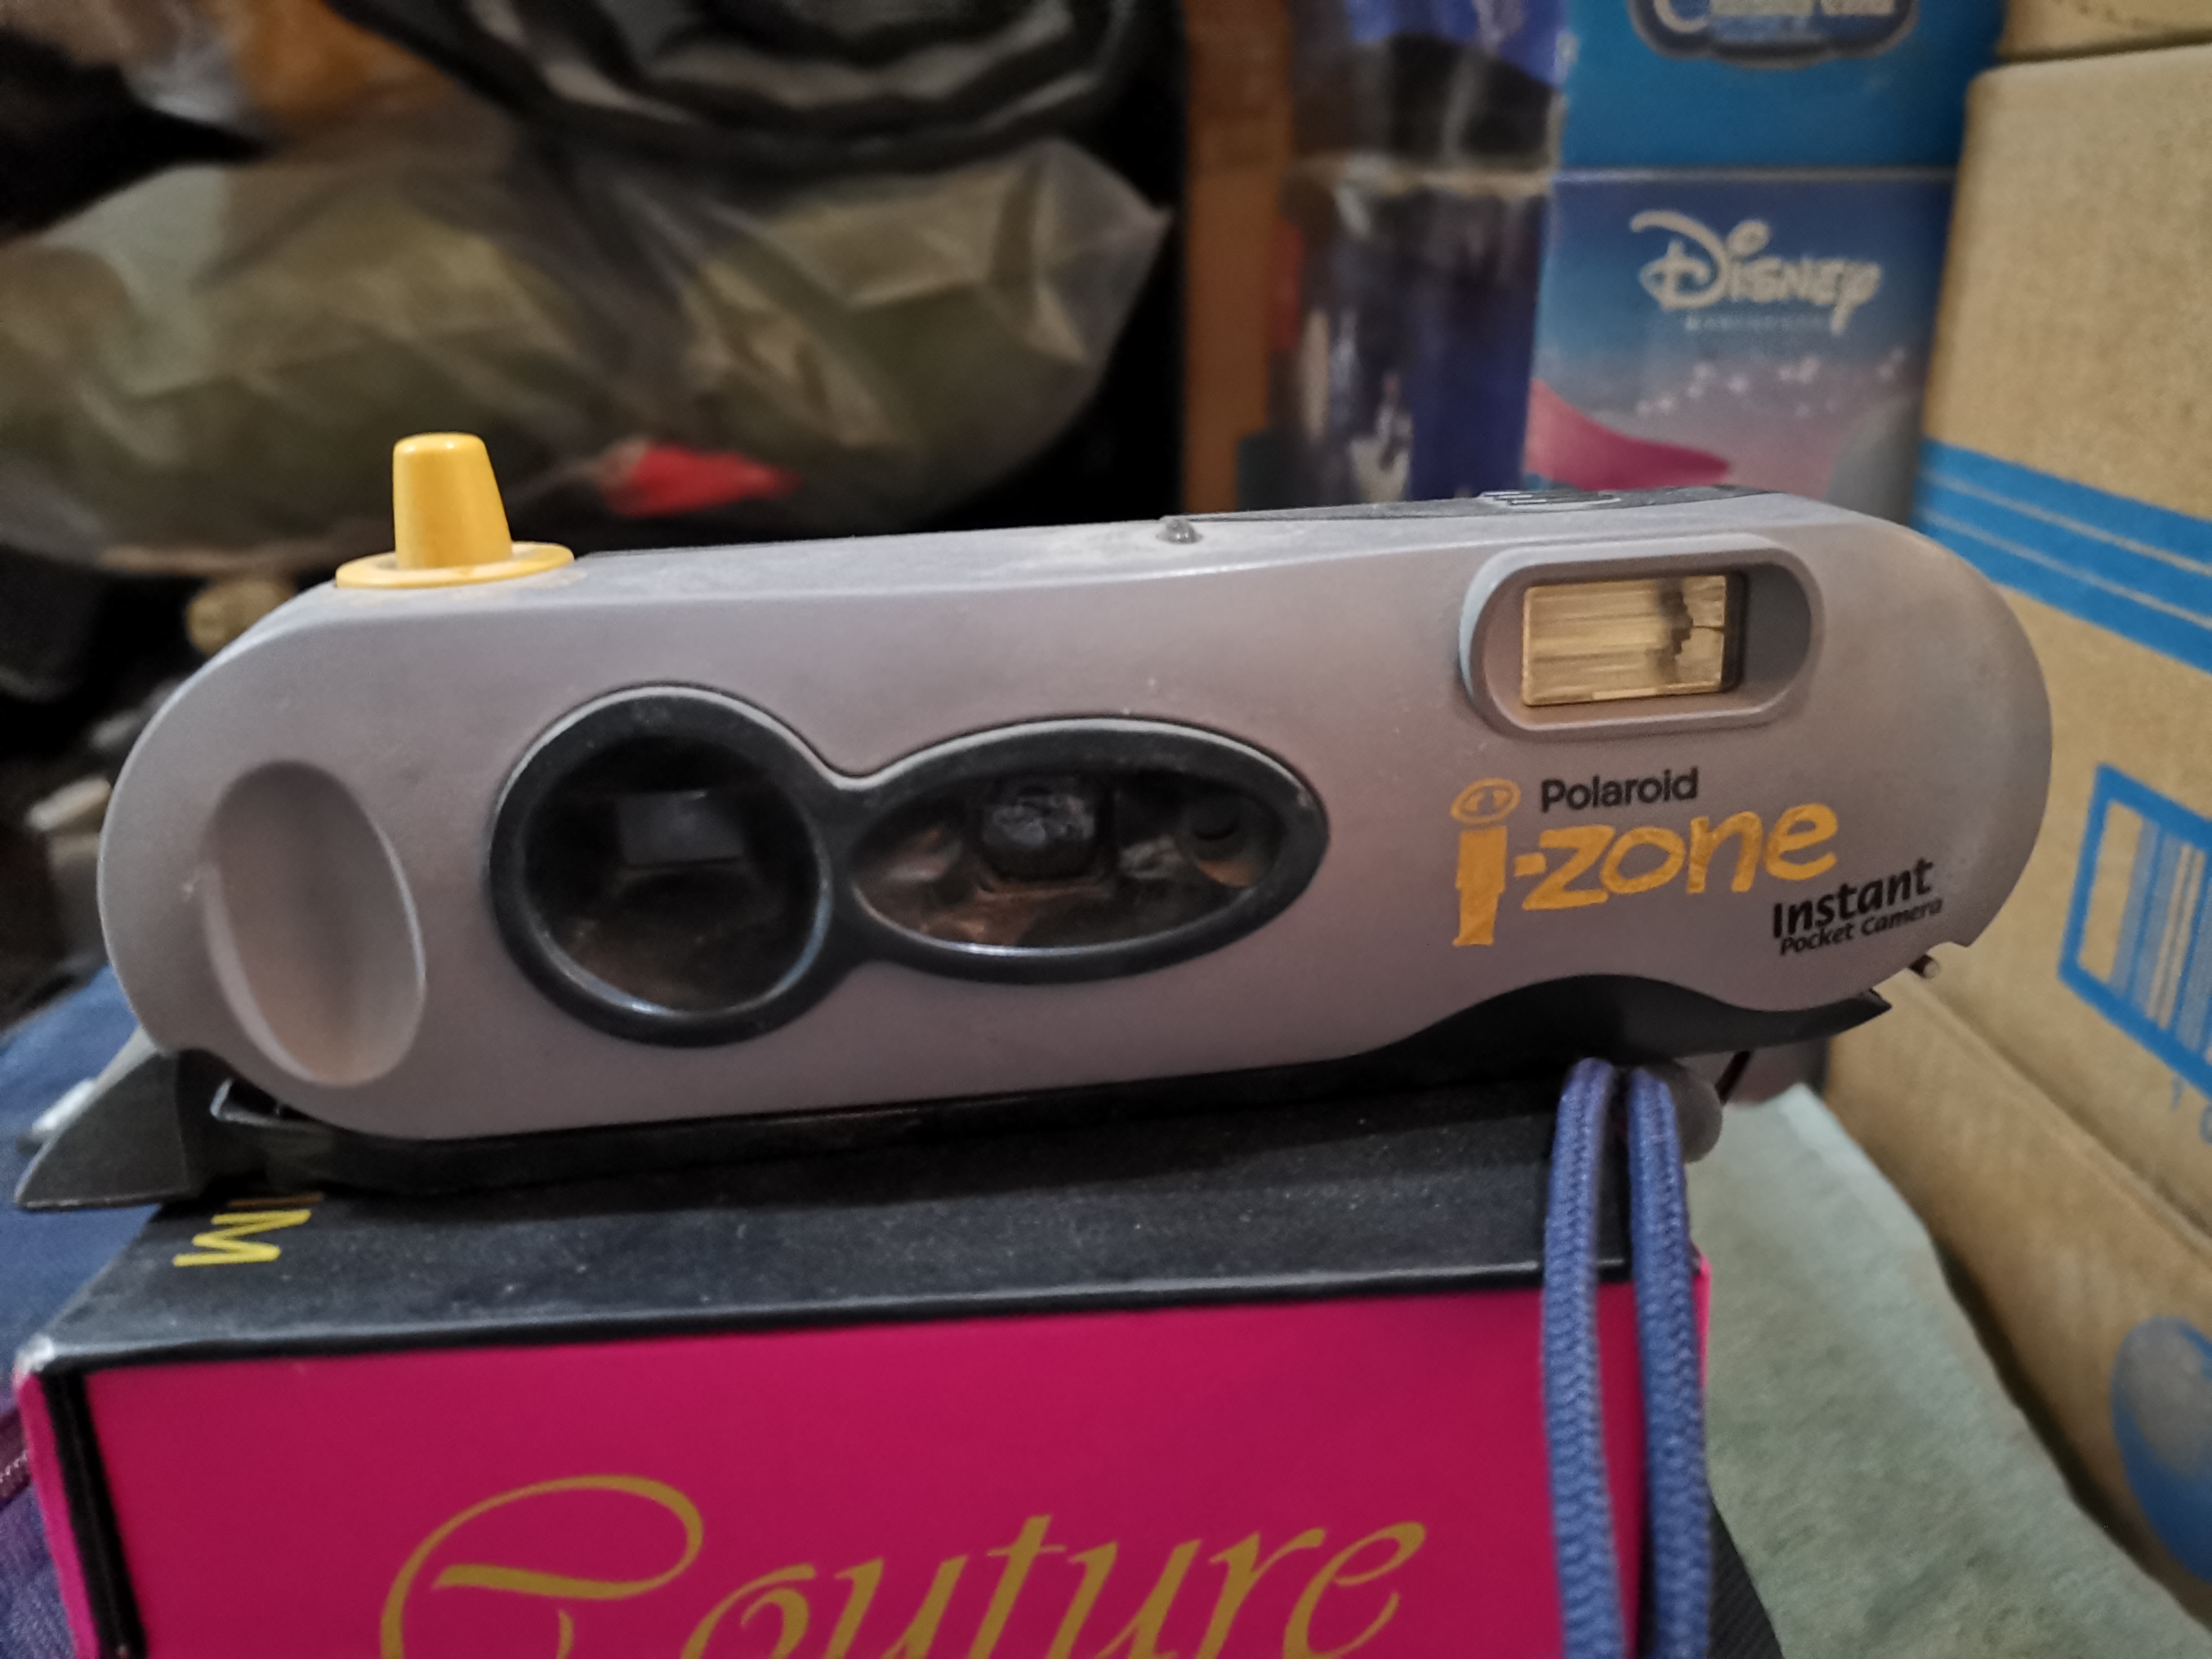 Polaroid i-zone pocket instant camera